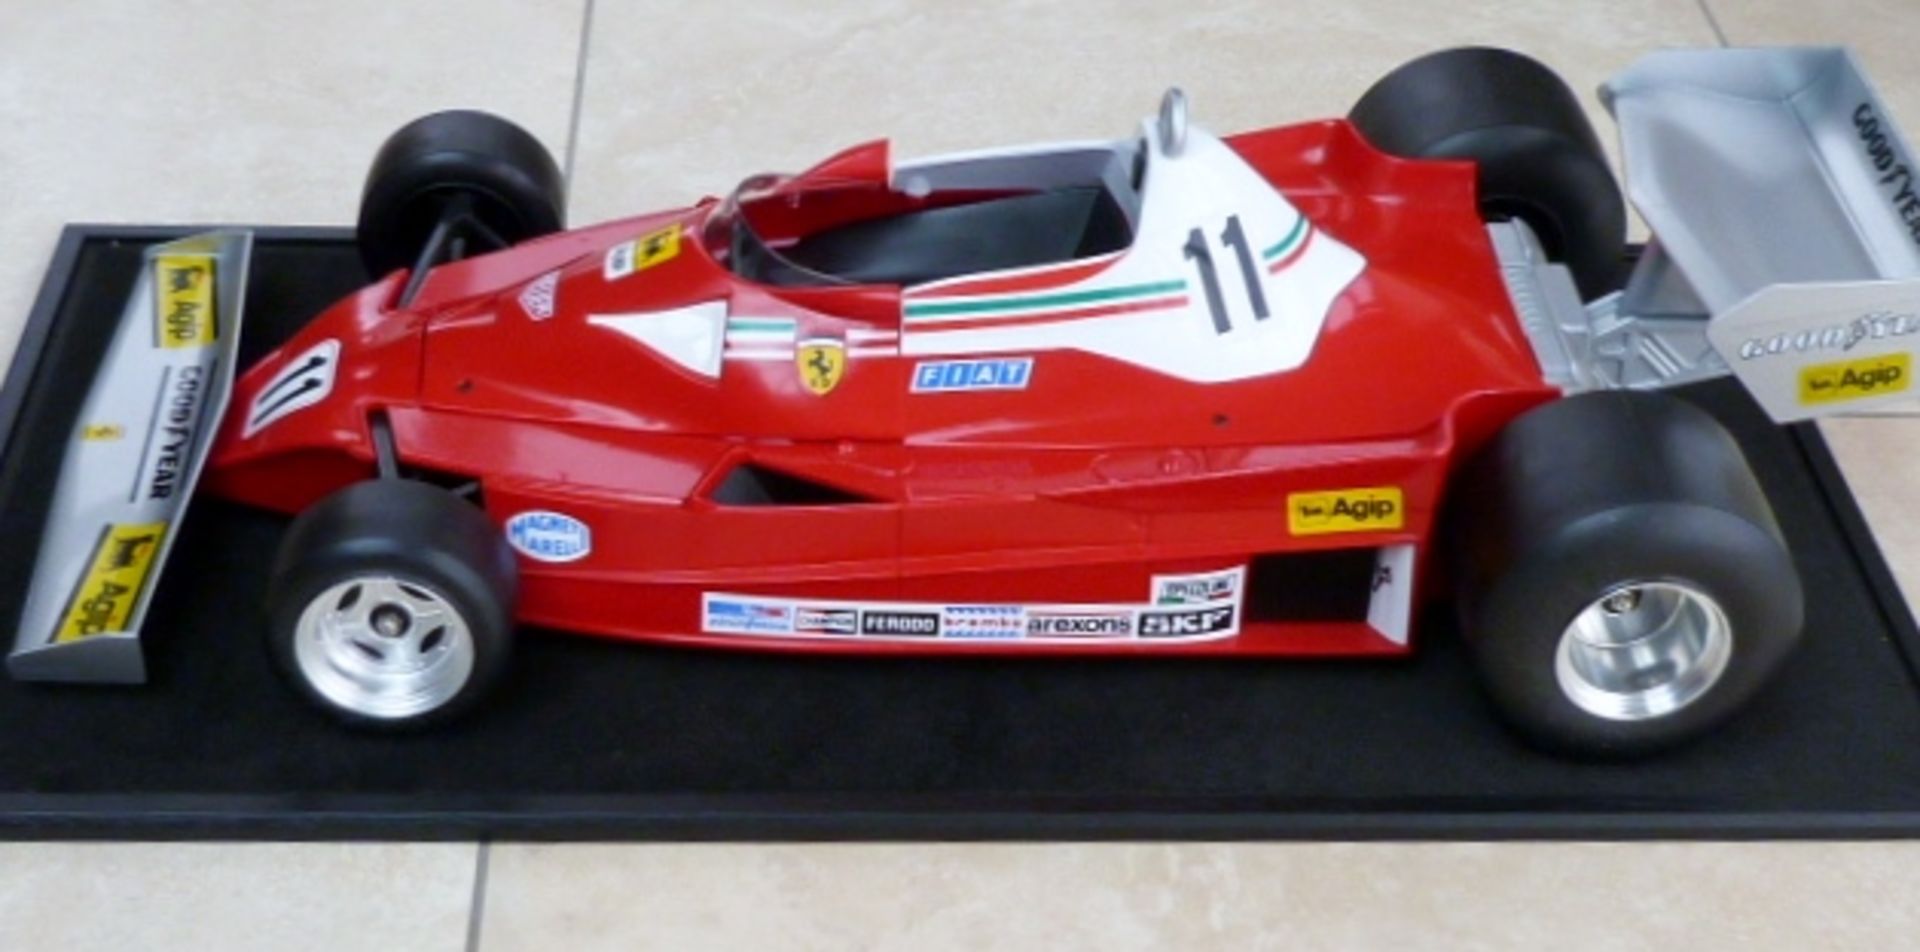 Ferrari 312T3 in 1/8 scale.